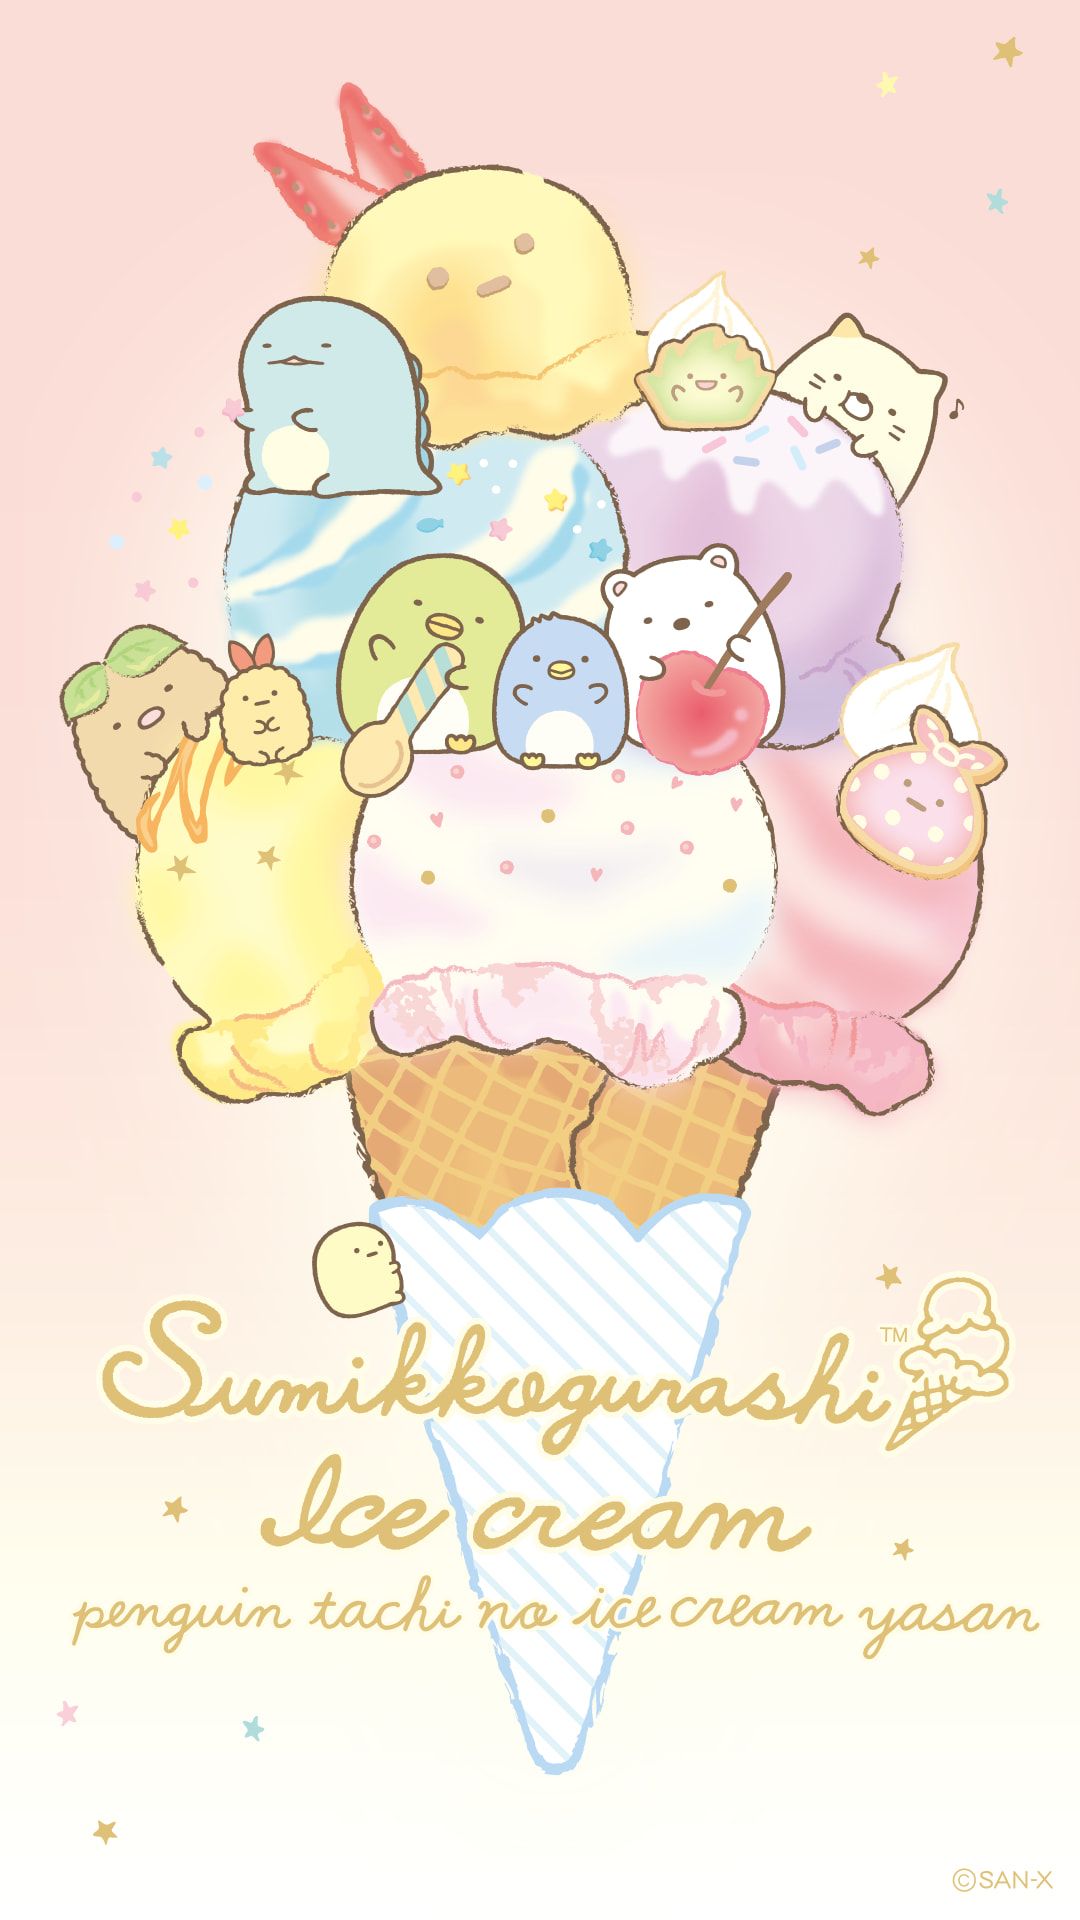 Sumikko Gurashi Kawaii Wallpaper Hello Kitty Cute Dra - vrogue.co